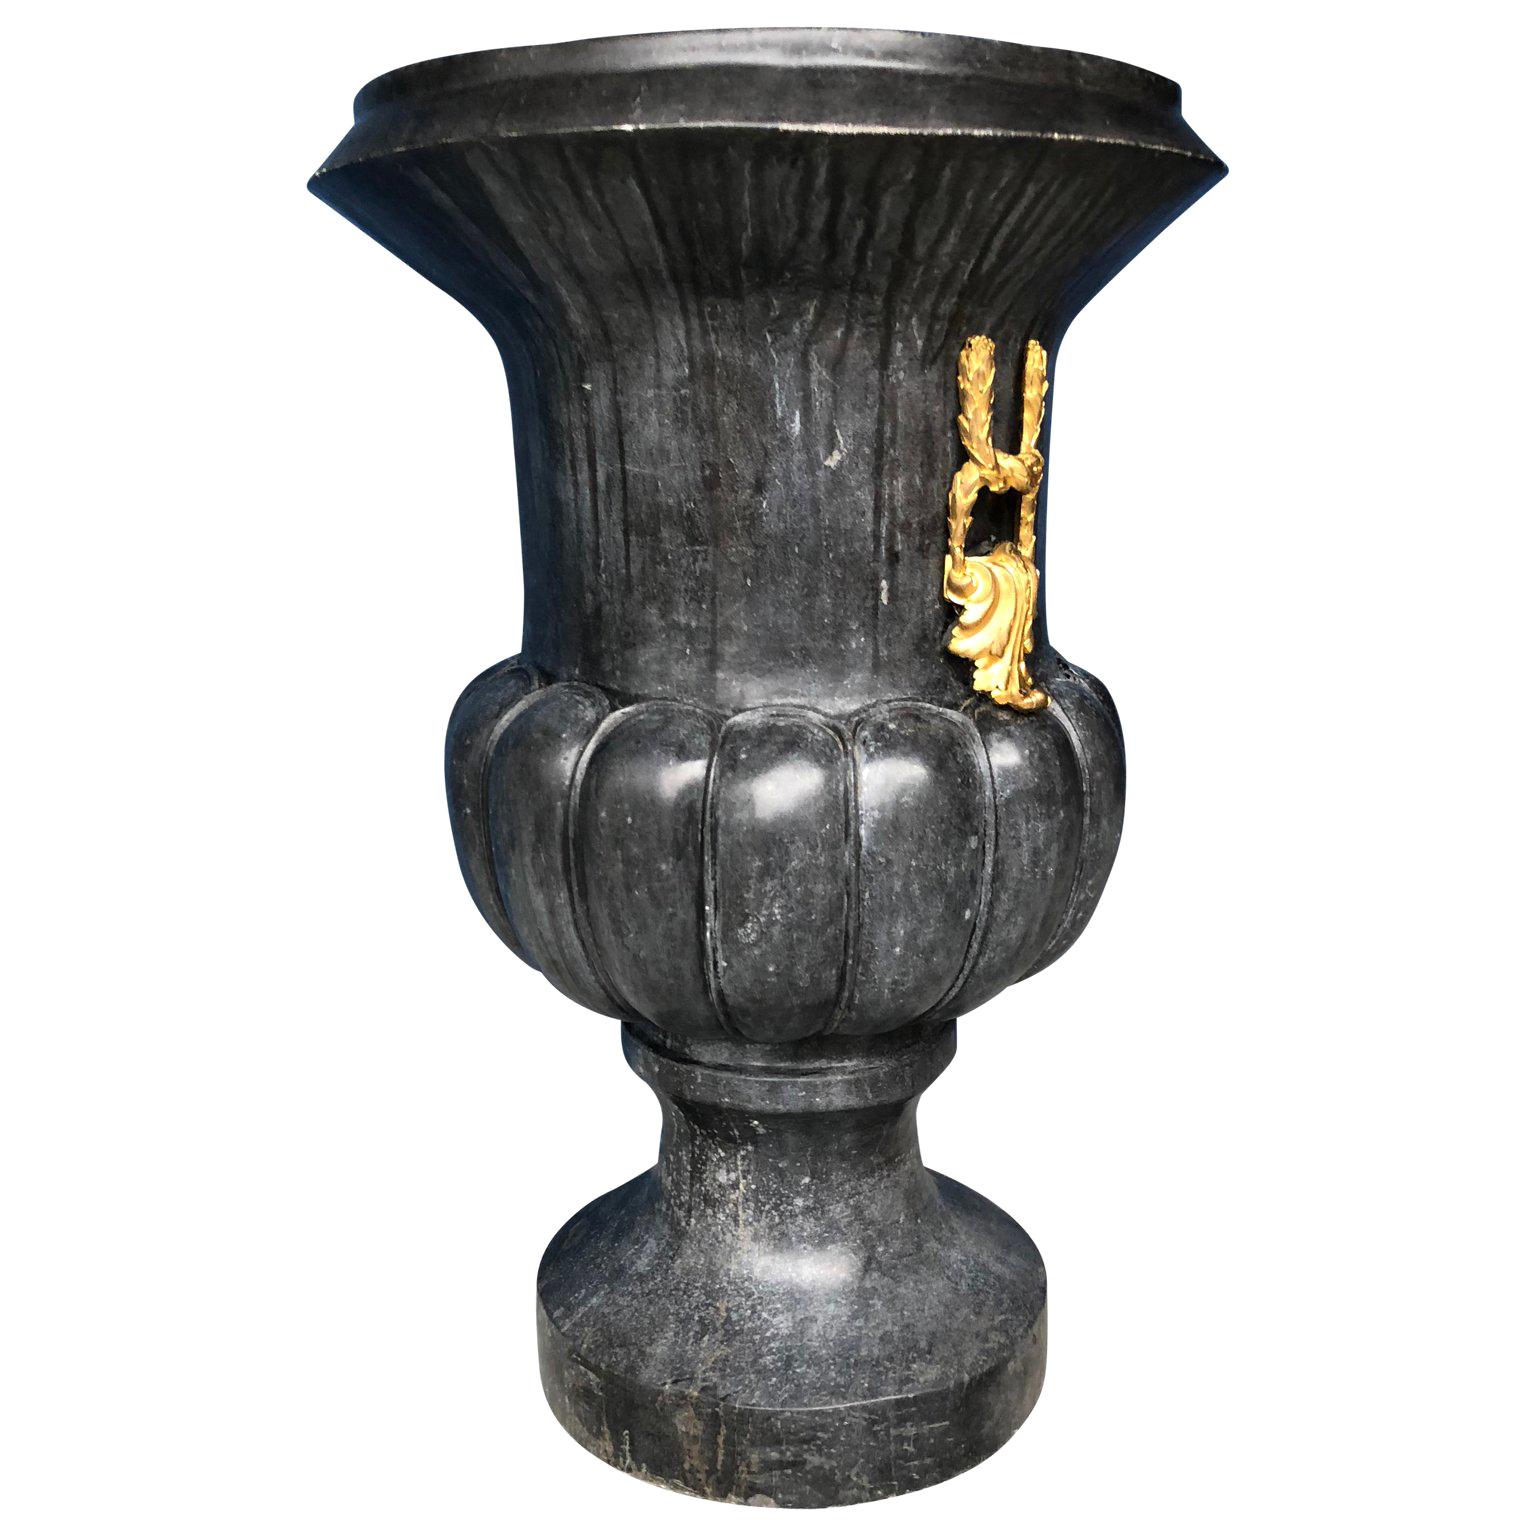 Grande urne italienne à bulbe en marbre noir du 19e siècle avec quincaillerie dorée en ormolu

Grande urne italienne en marbre sculptée à la main. Le corps principal est sculpté dans un épais et large marbre bulbeux, un marbre qui présente une